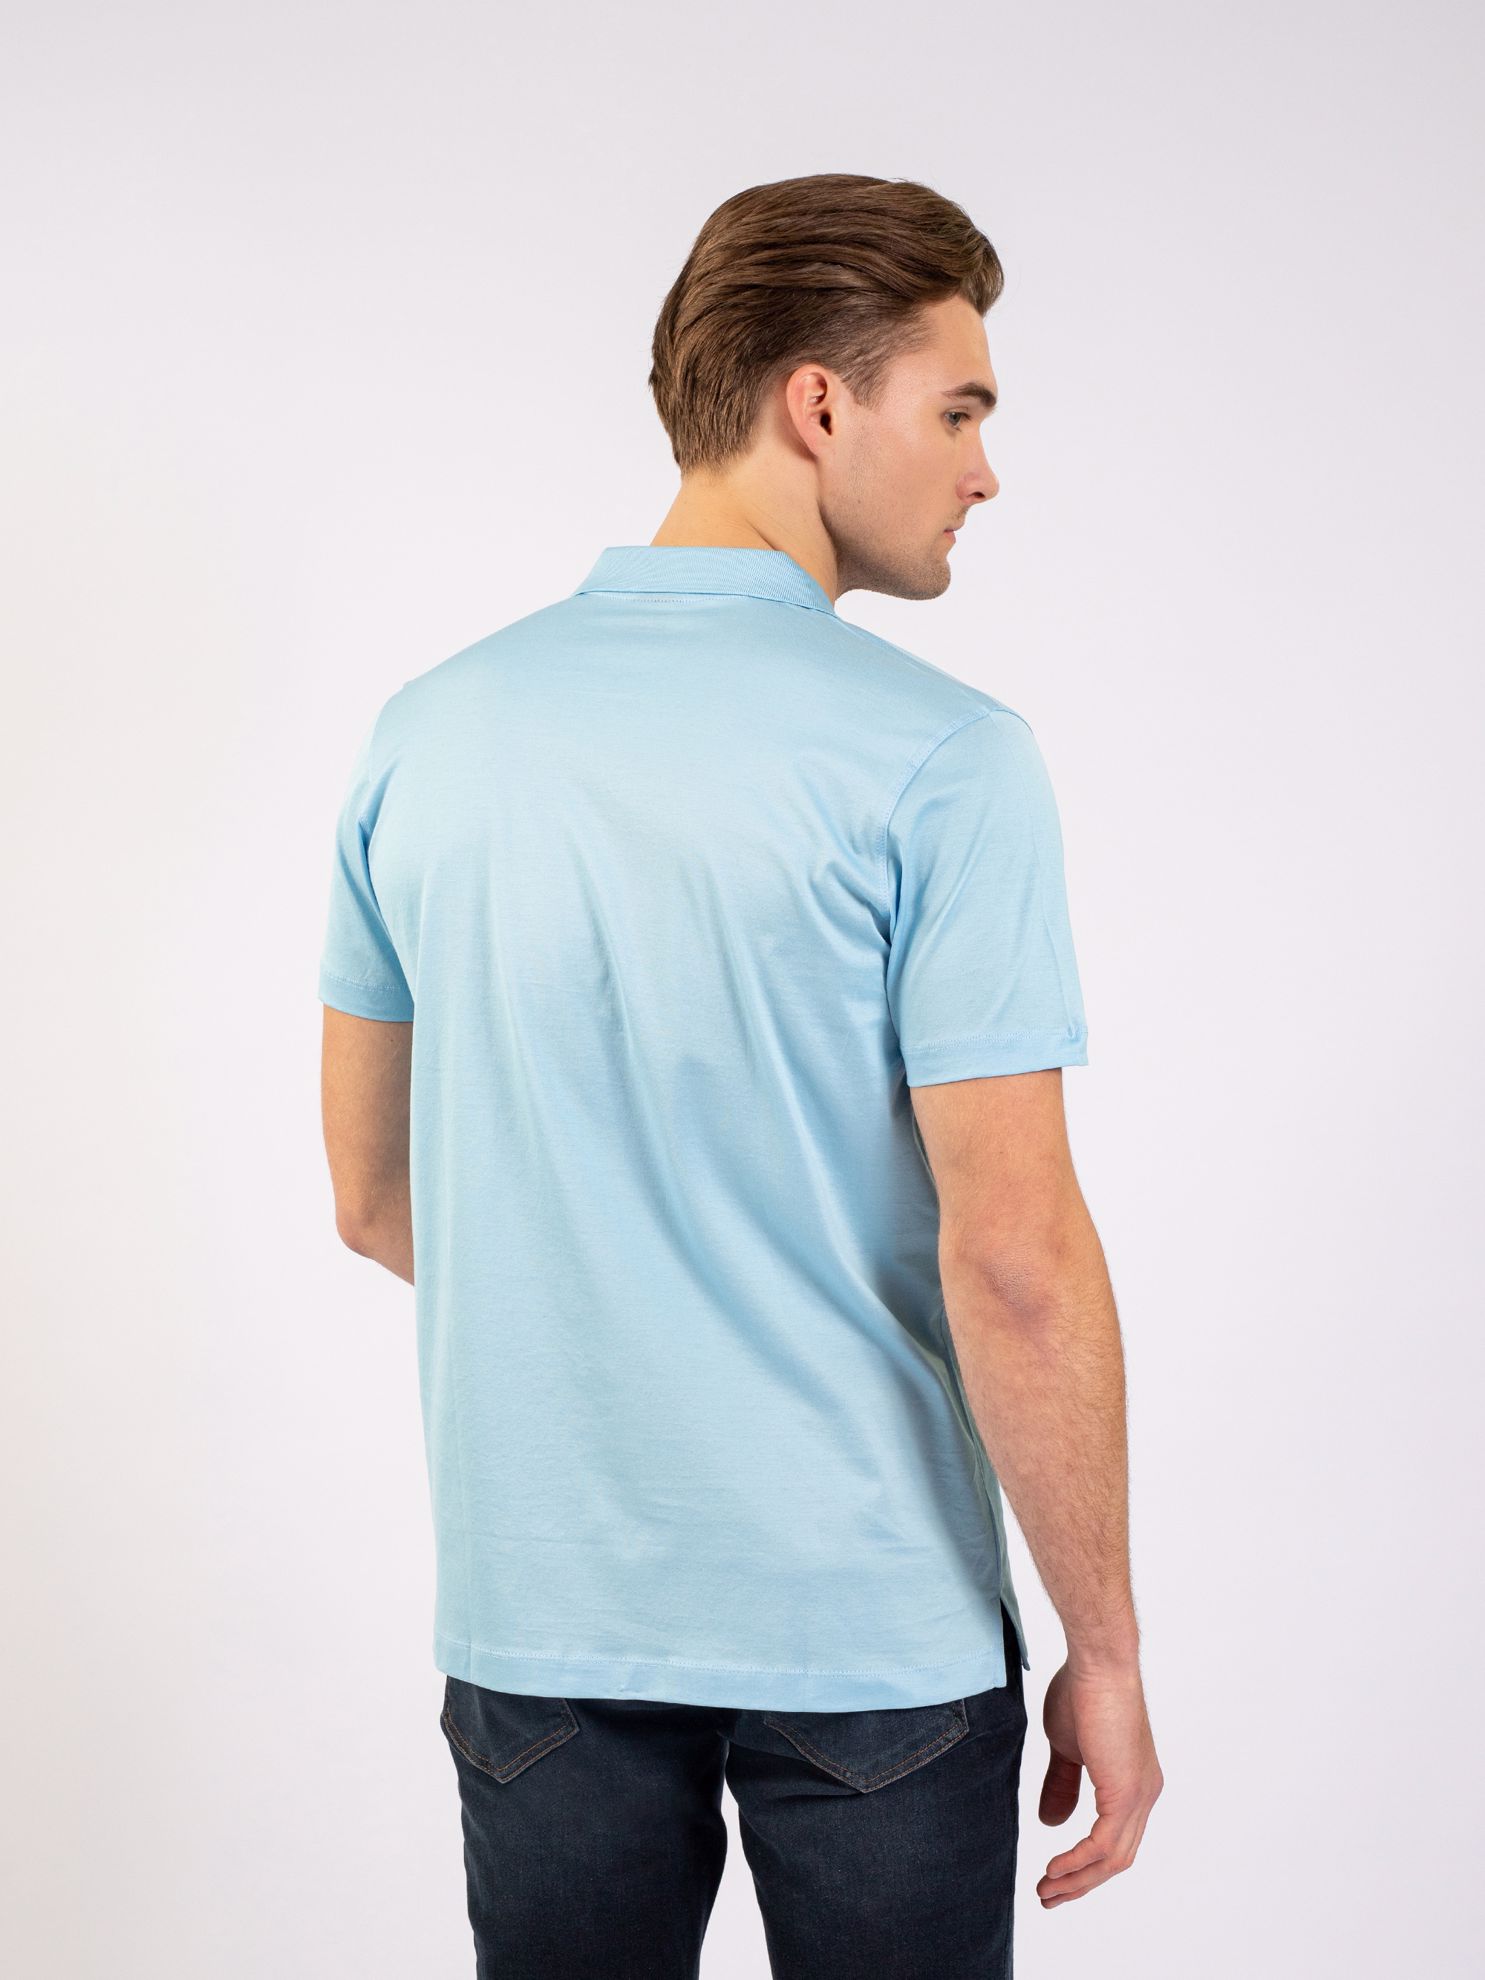 Karaca Erkek Regular Fit Polo Yaka Tişört-Açık Mavi. ürün görseli